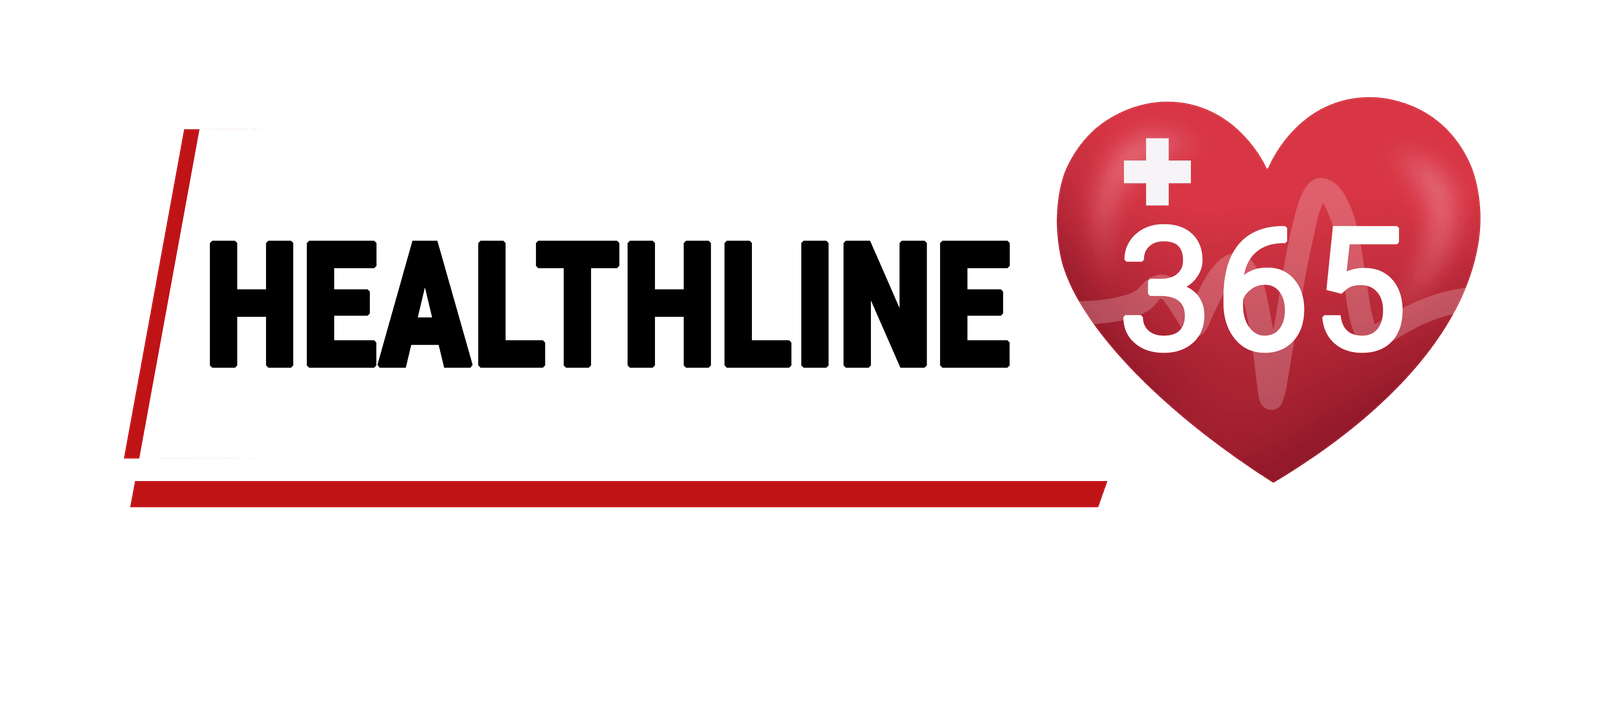 Healthline365.com